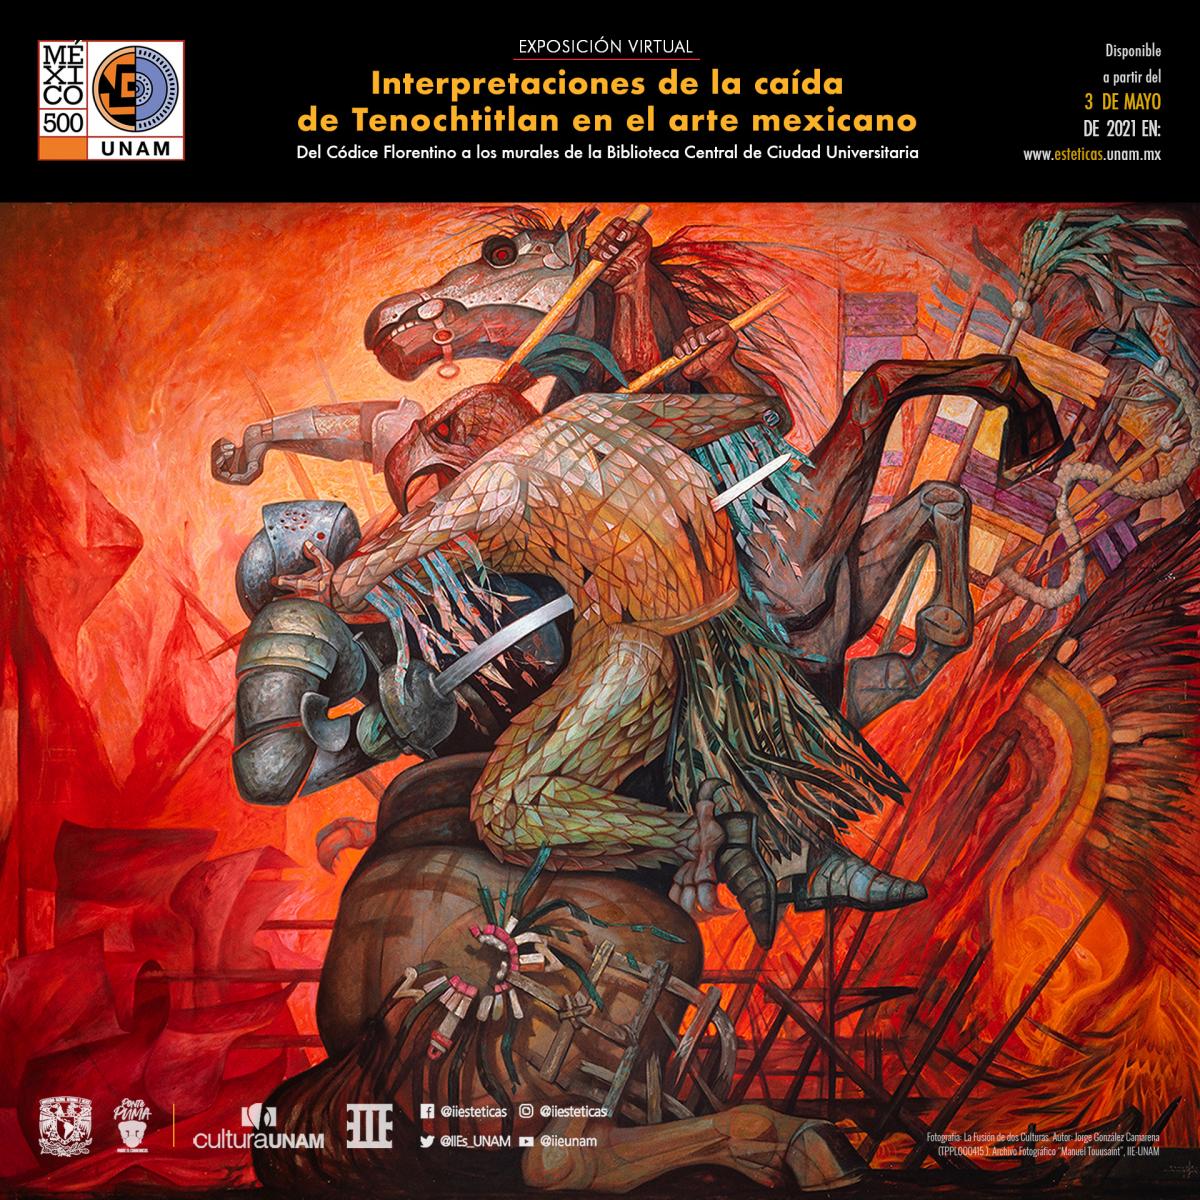 Exposición virtual Interpretaciones de la caída de Tenochtitlan en el arte mexicano. Del Códice Florentino a los murales de la Biblioteca Central de Ciudad Universitaria